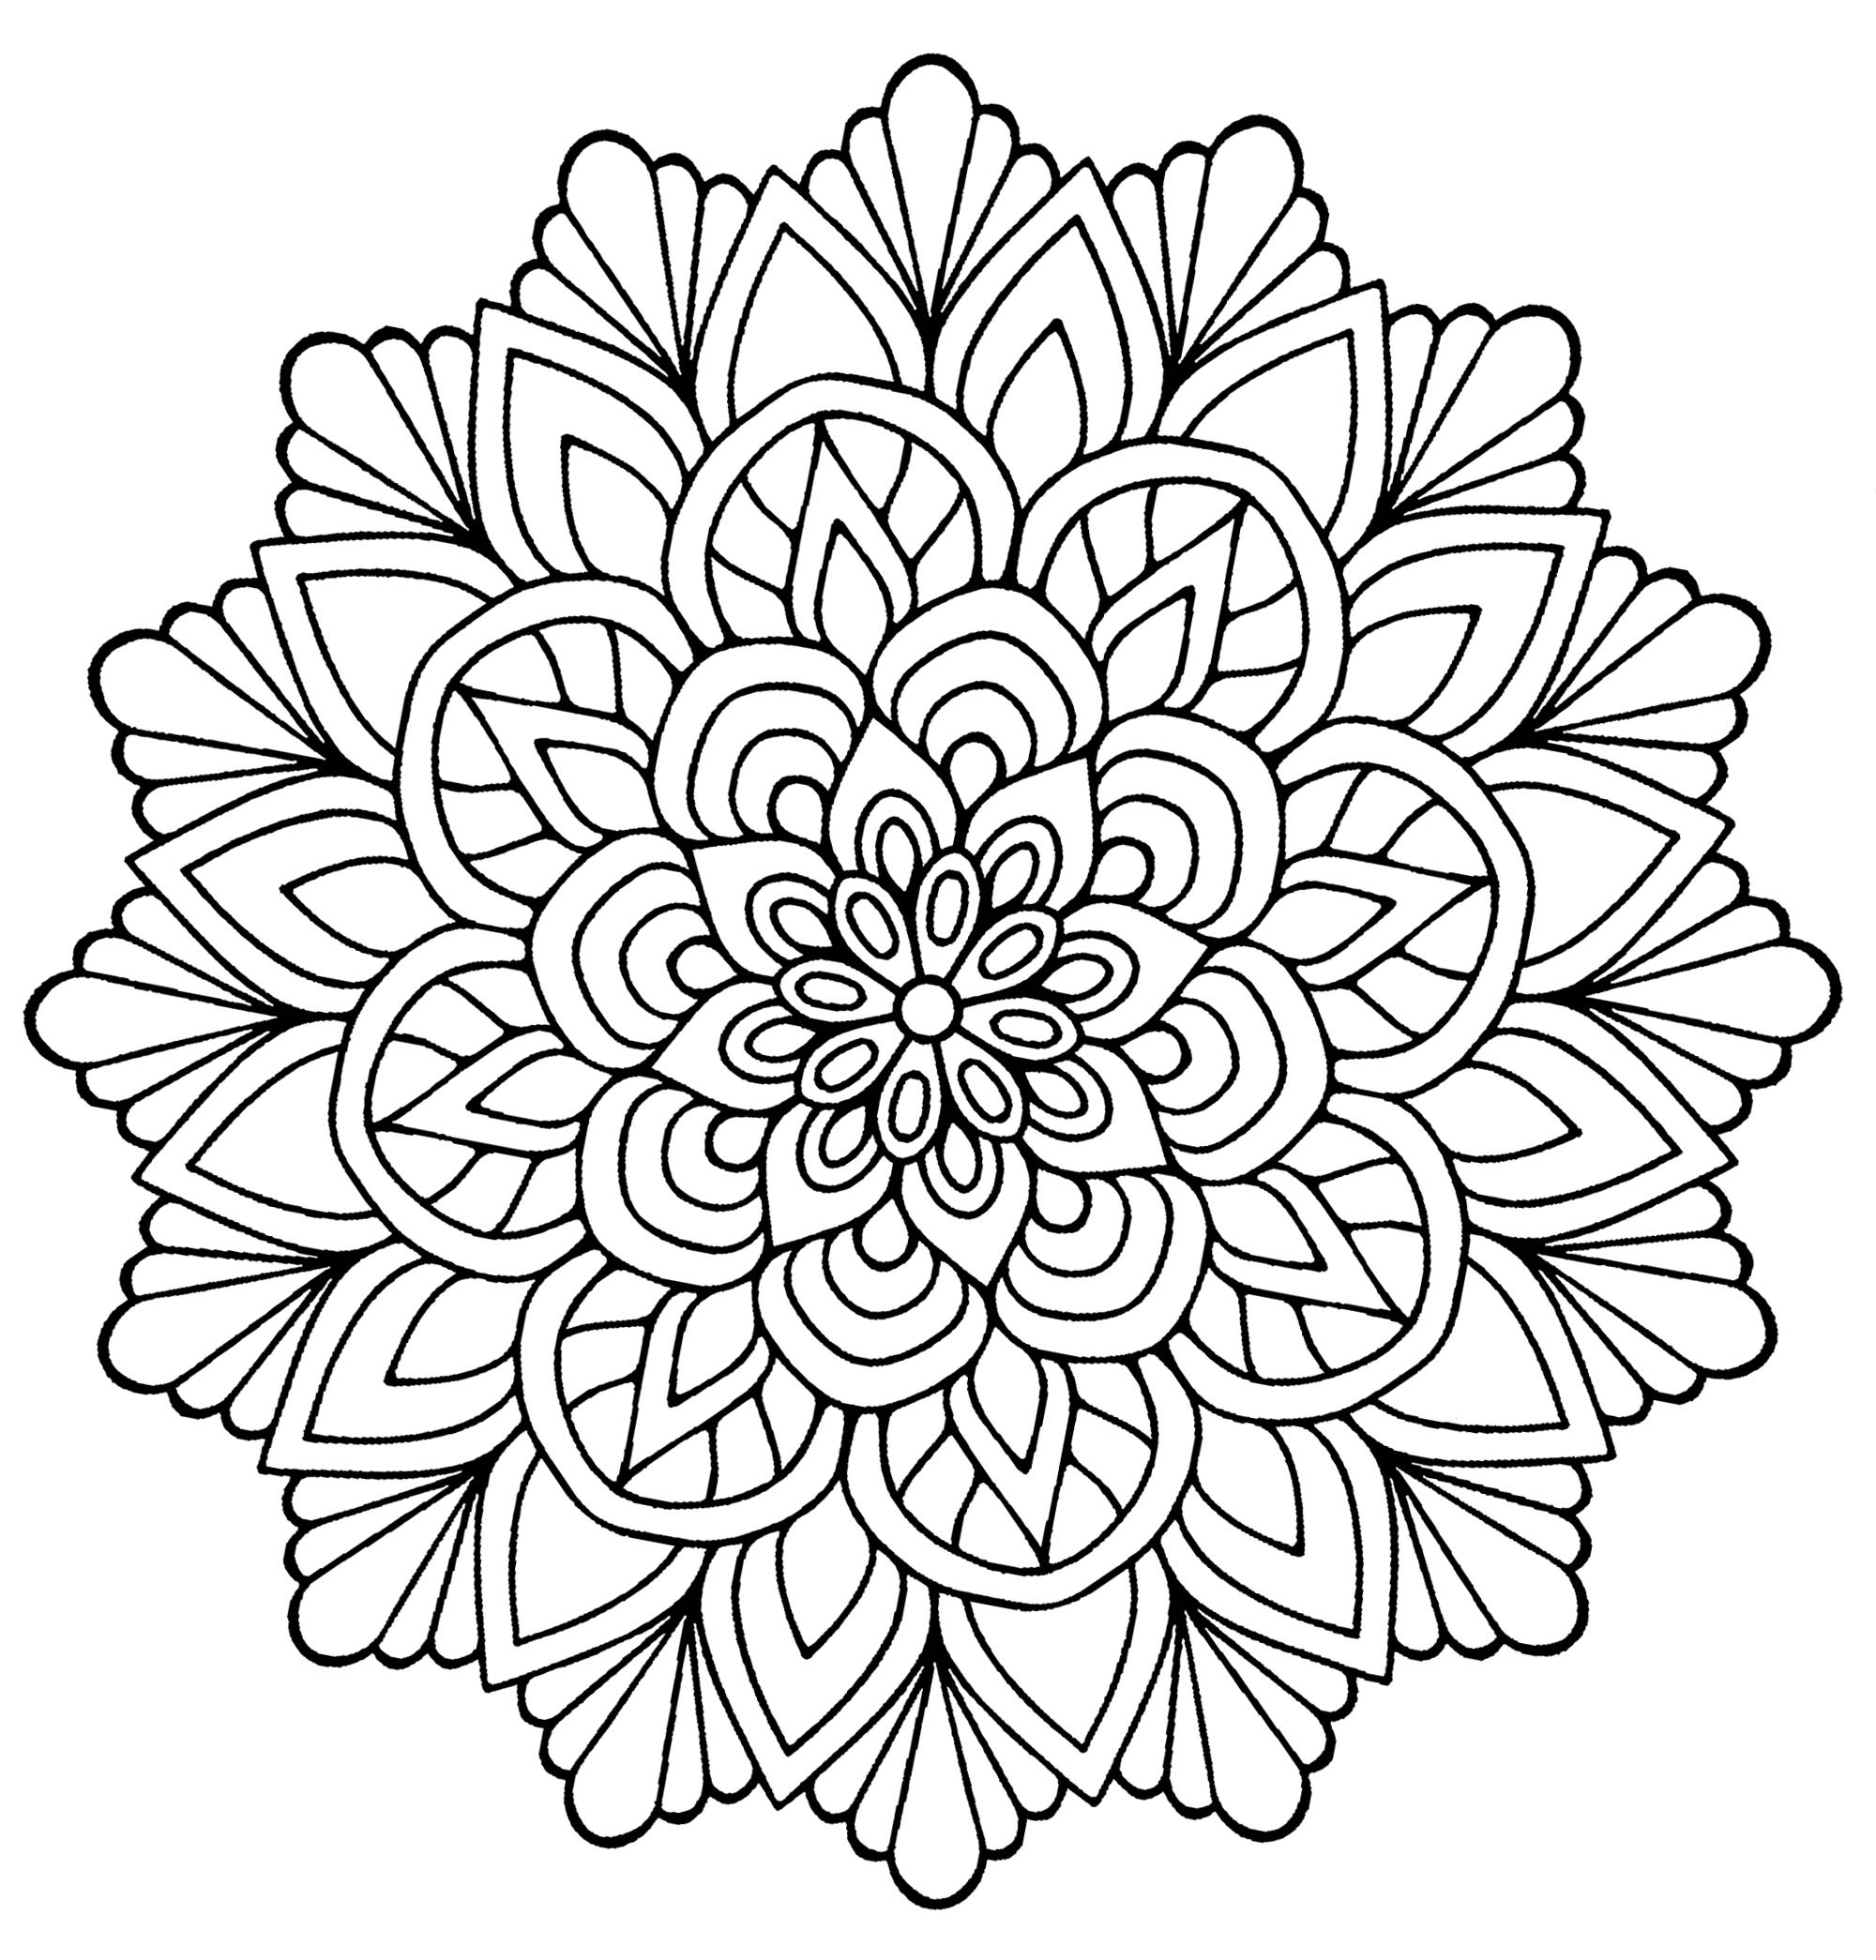 Un beau Mandala à colorier, ressemblant à une fleur avec des feuilles